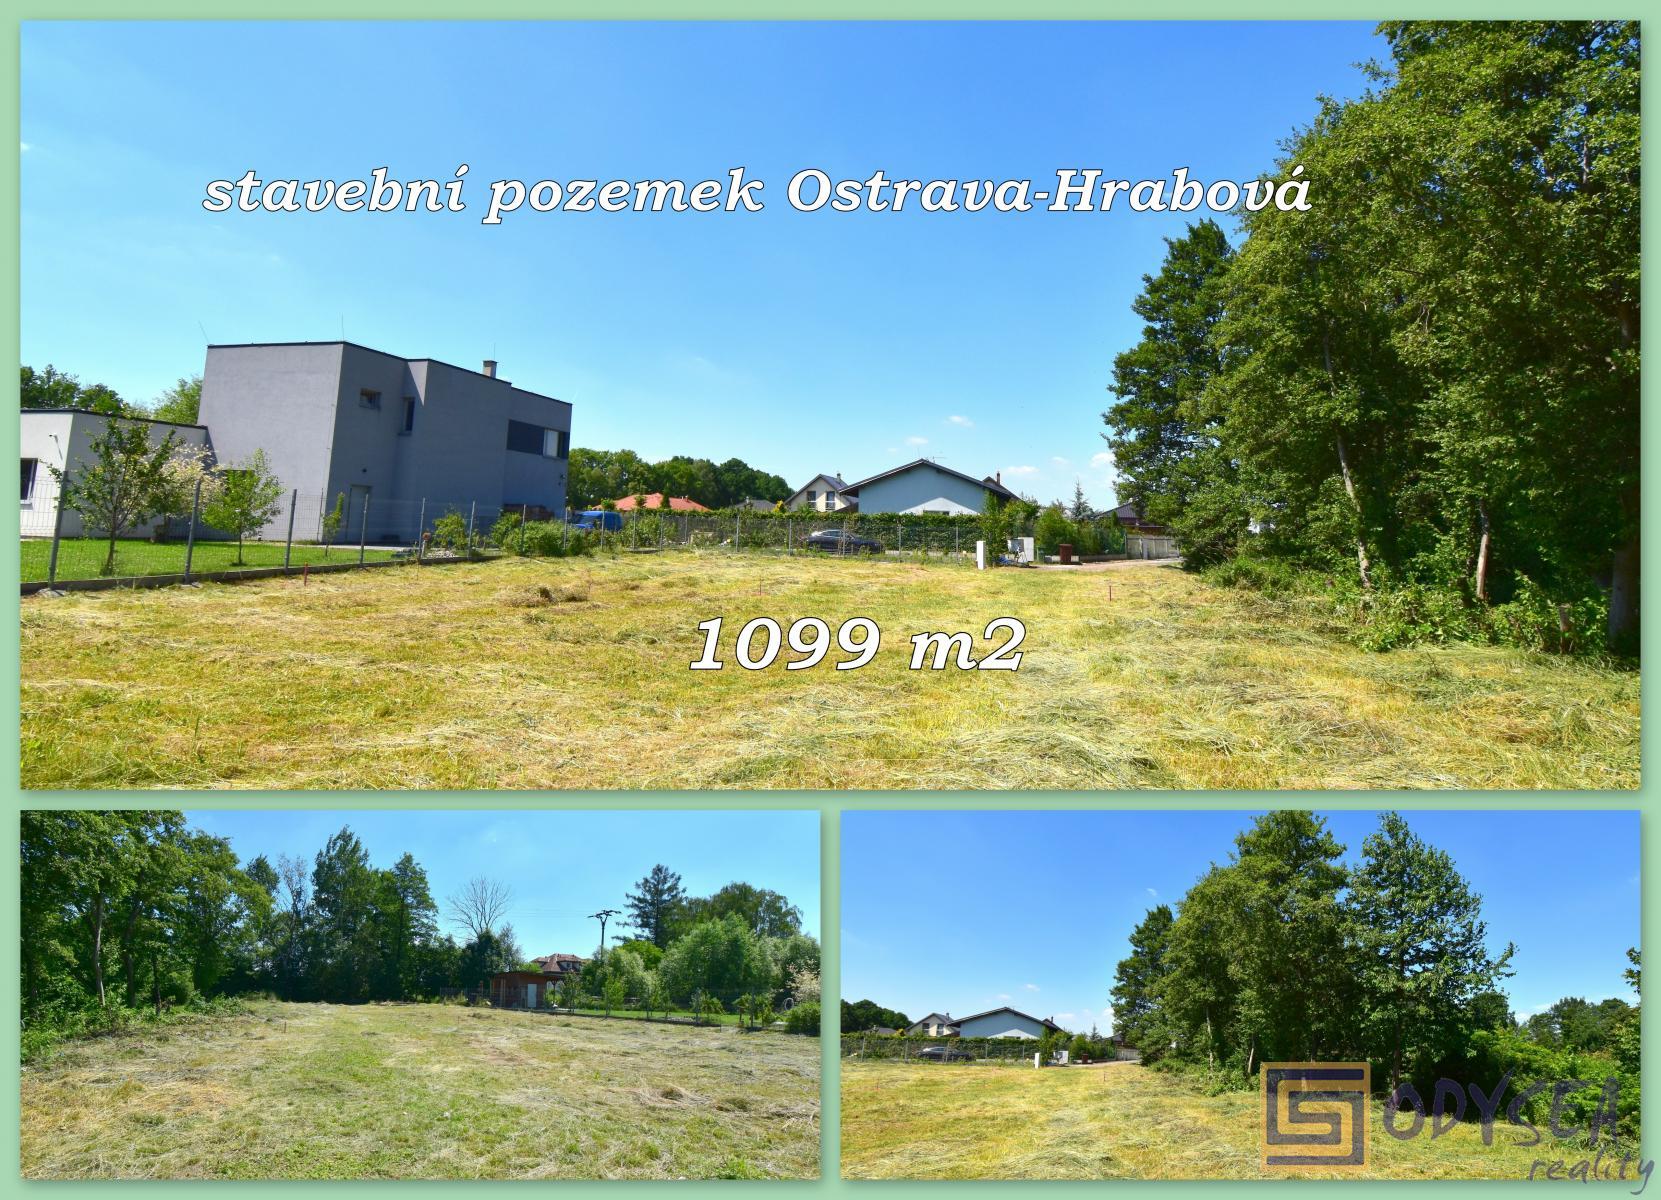 Stavební pozemek 1099 m2, Ostrava-Hrabová, okr. Ostrava-město, obrázek č. 1